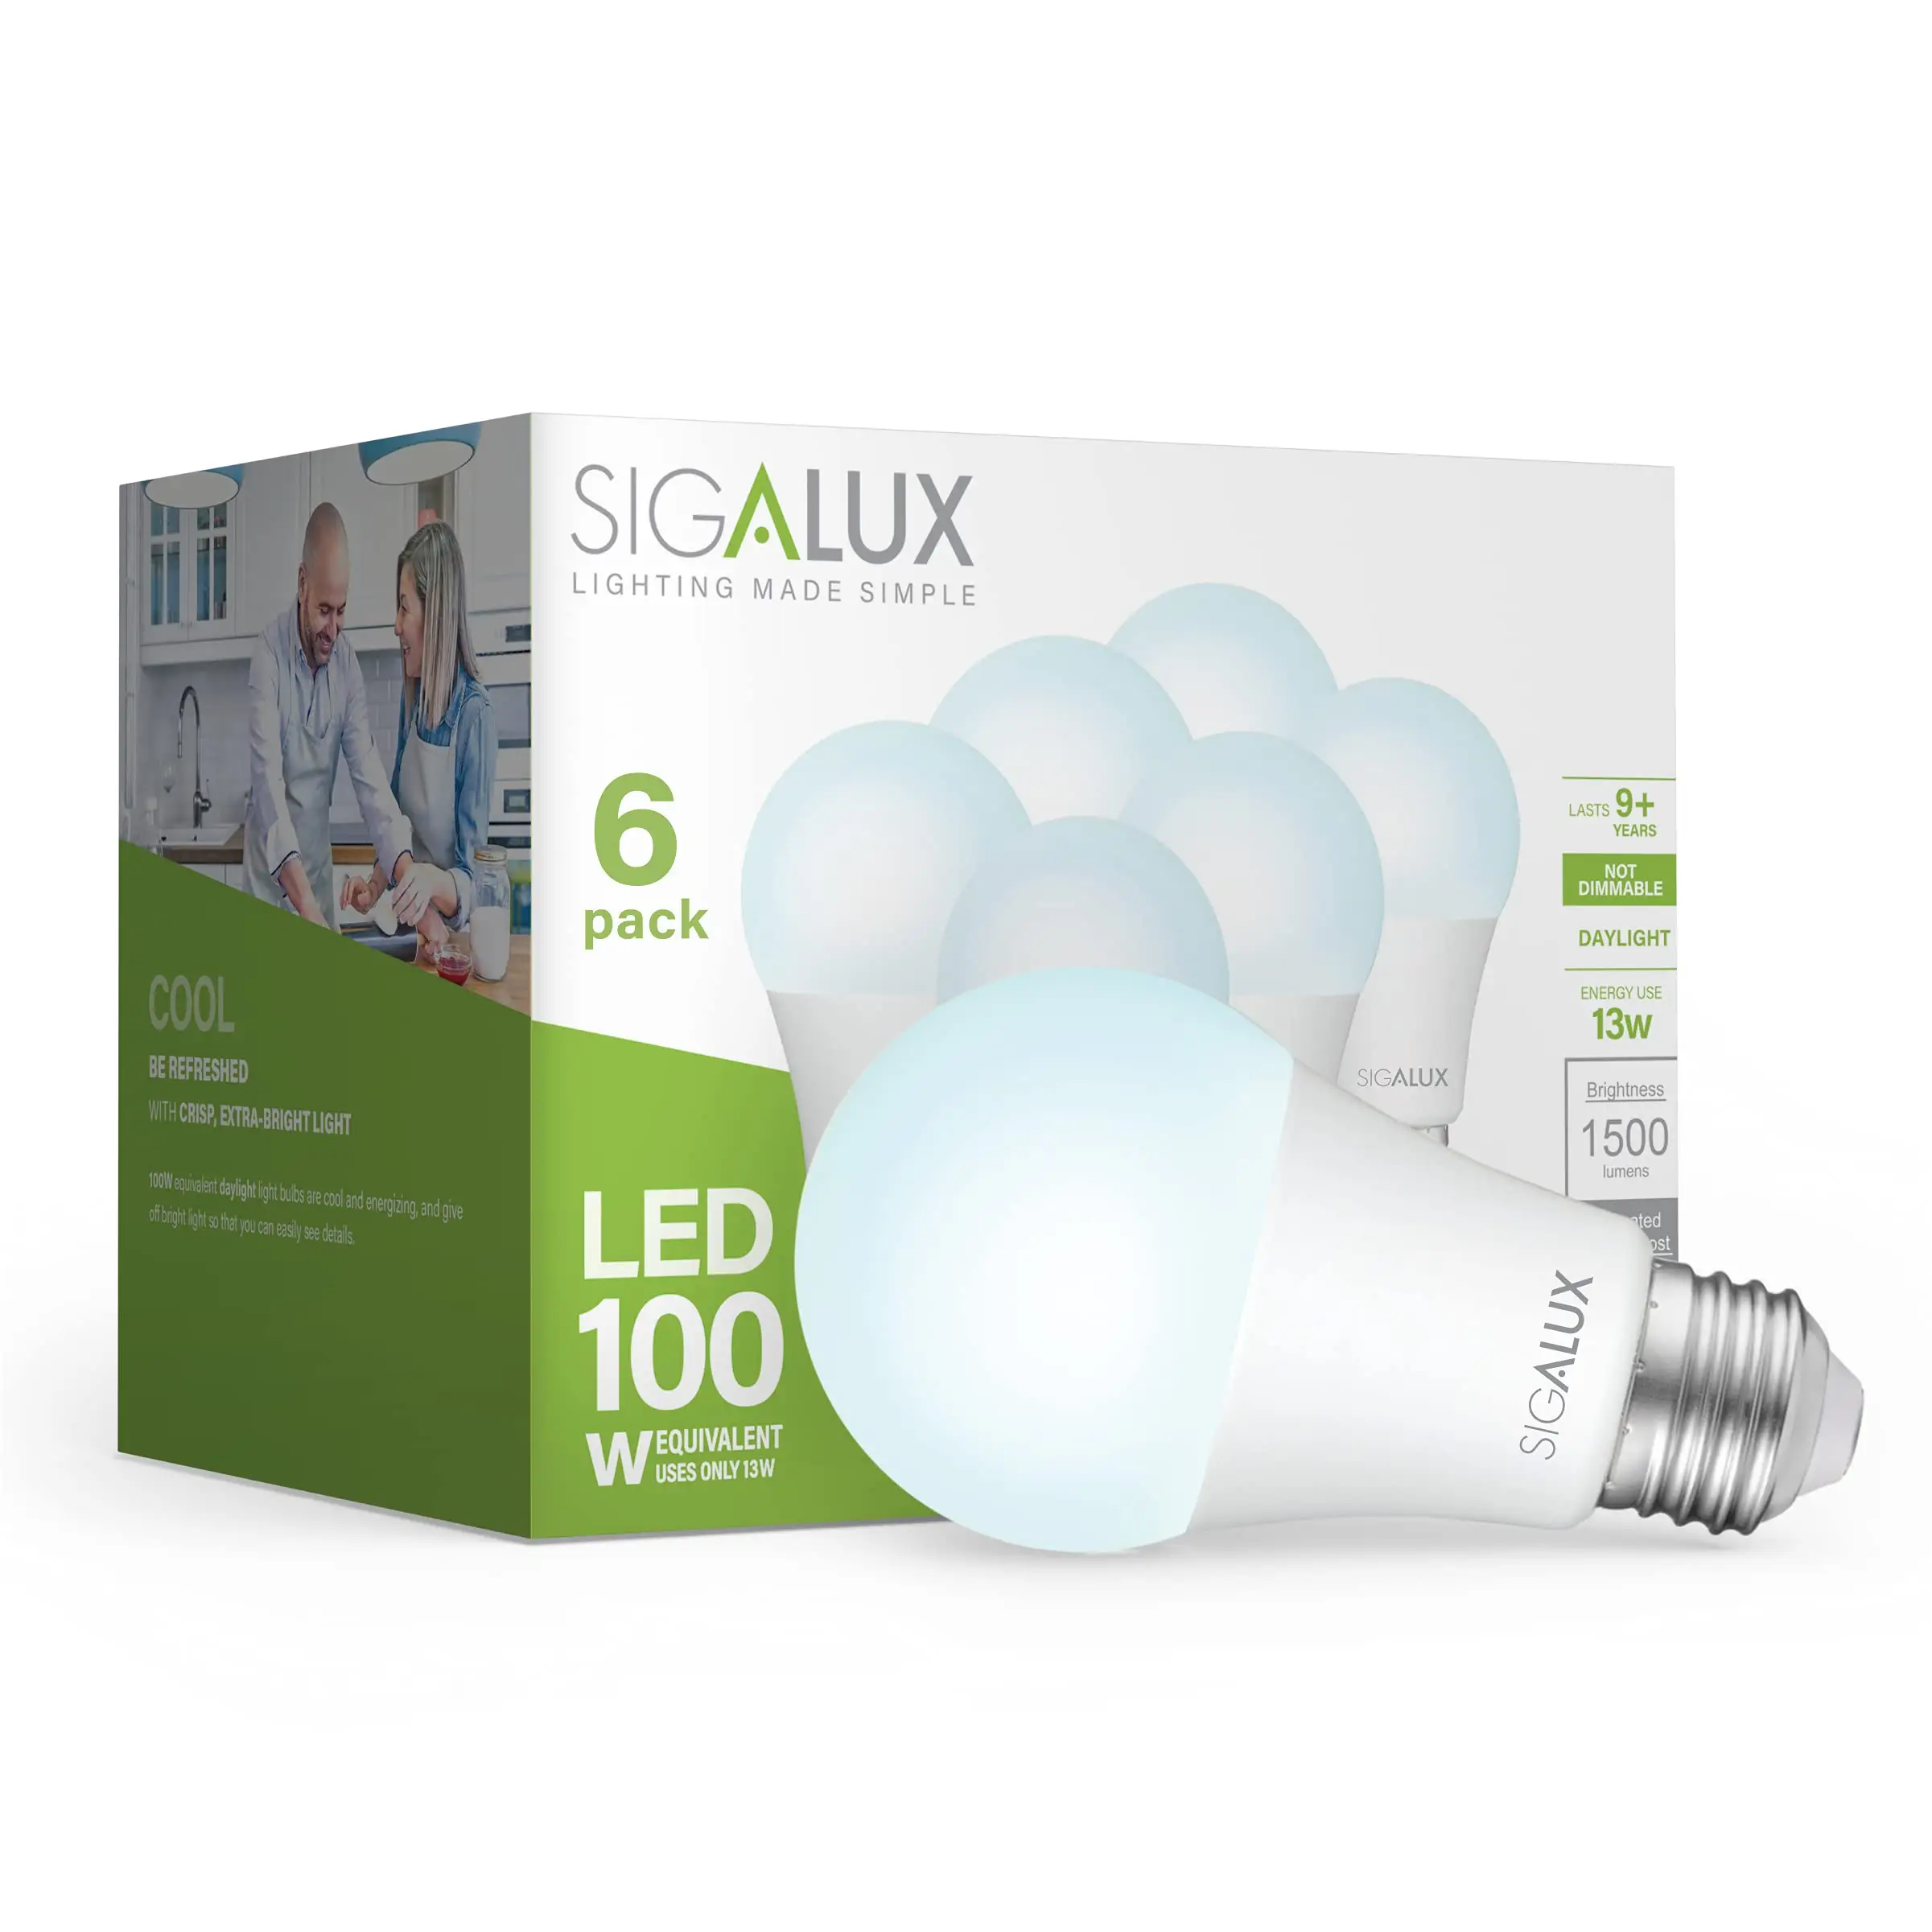 LED Light Bulbs 30 Watt Equivalent Standard Warm 4100k Light Bulbs Soft White Nature Energy Saving 1500 Lumen